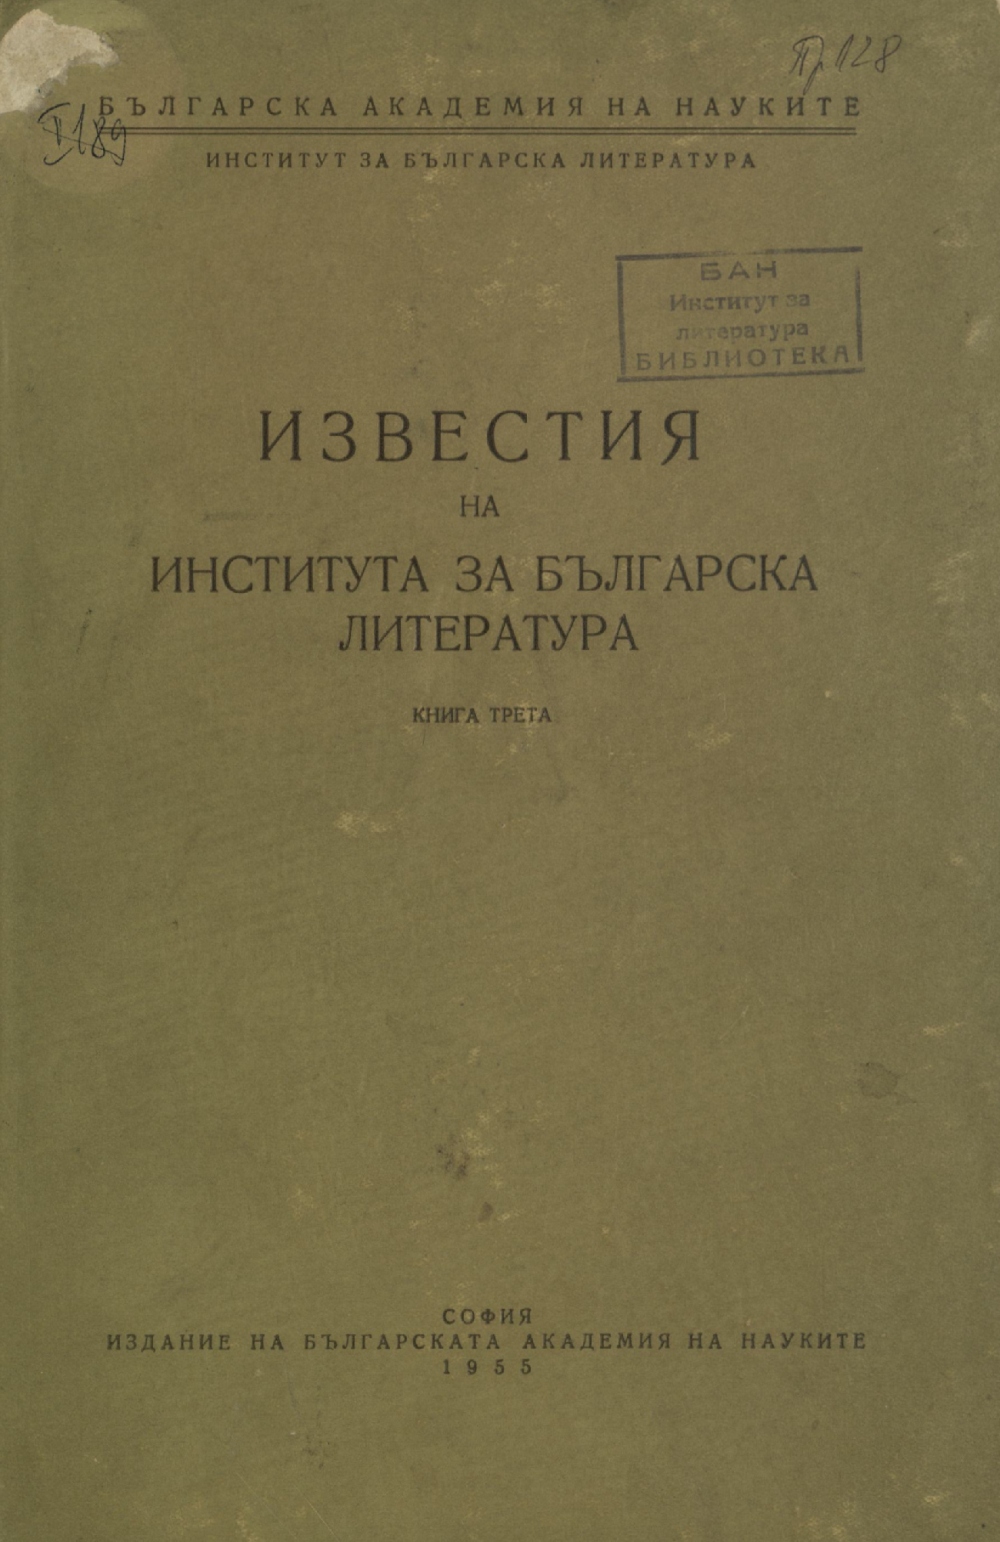 Участие на Института за българска литература в научни сесии и чествания на писатели през 1954 г.  